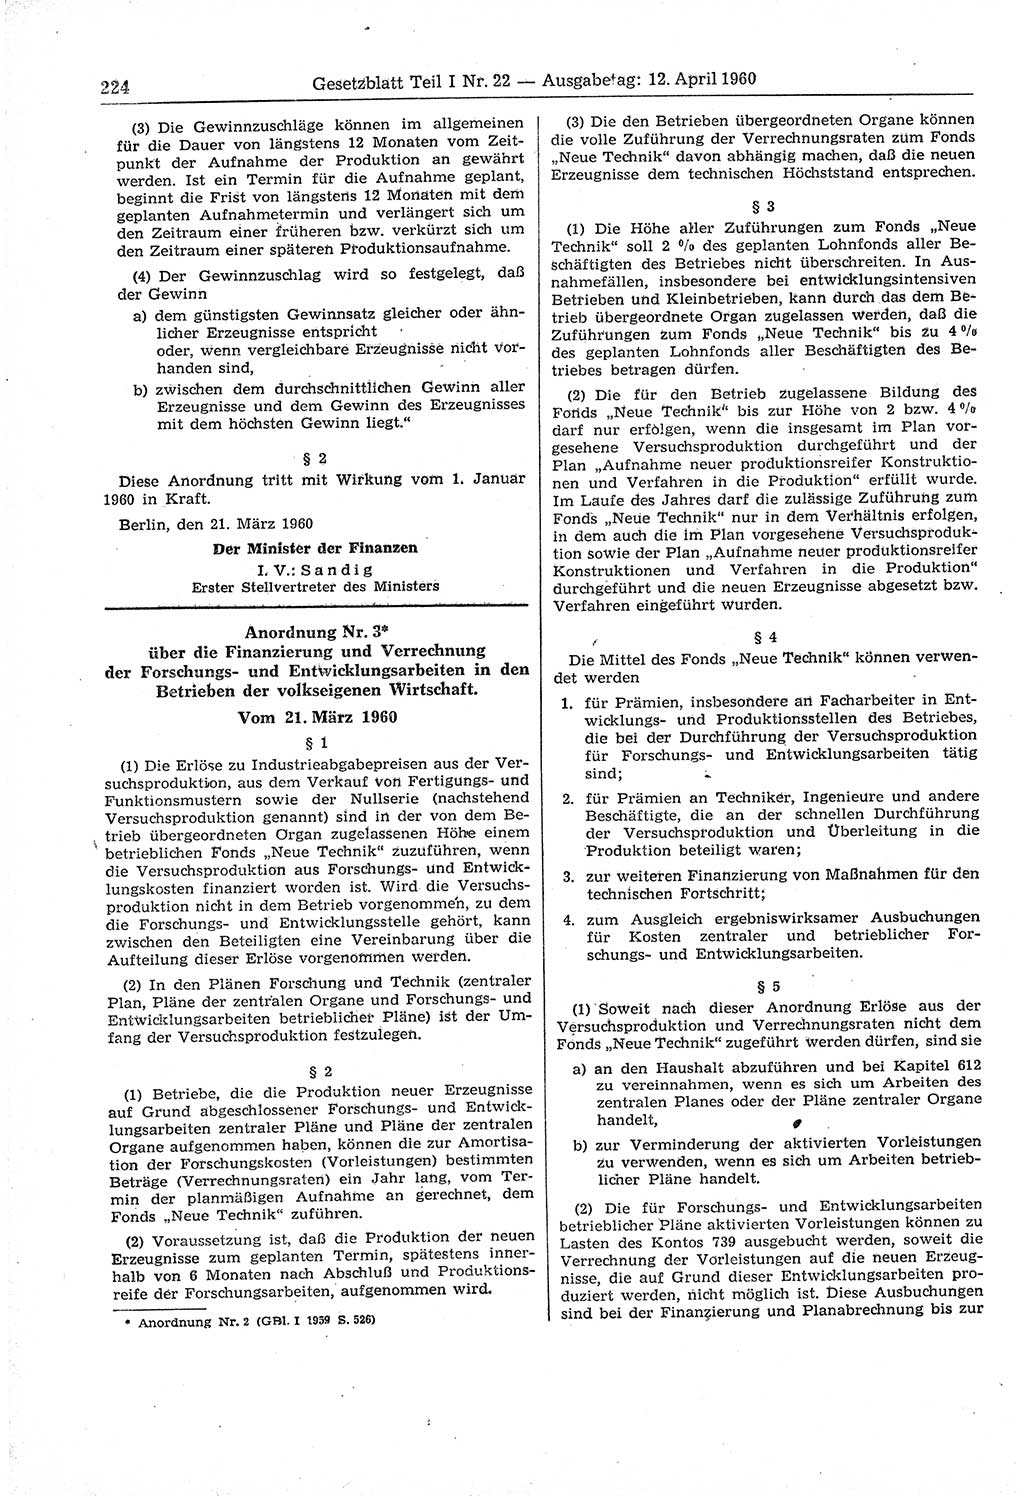 Gesetzblatt (GBl.) der Deutschen Demokratischen Republik (DDR) Teil Ⅰ 1960, Seite 224 (GBl. DDR Ⅰ 1960, S. 224)